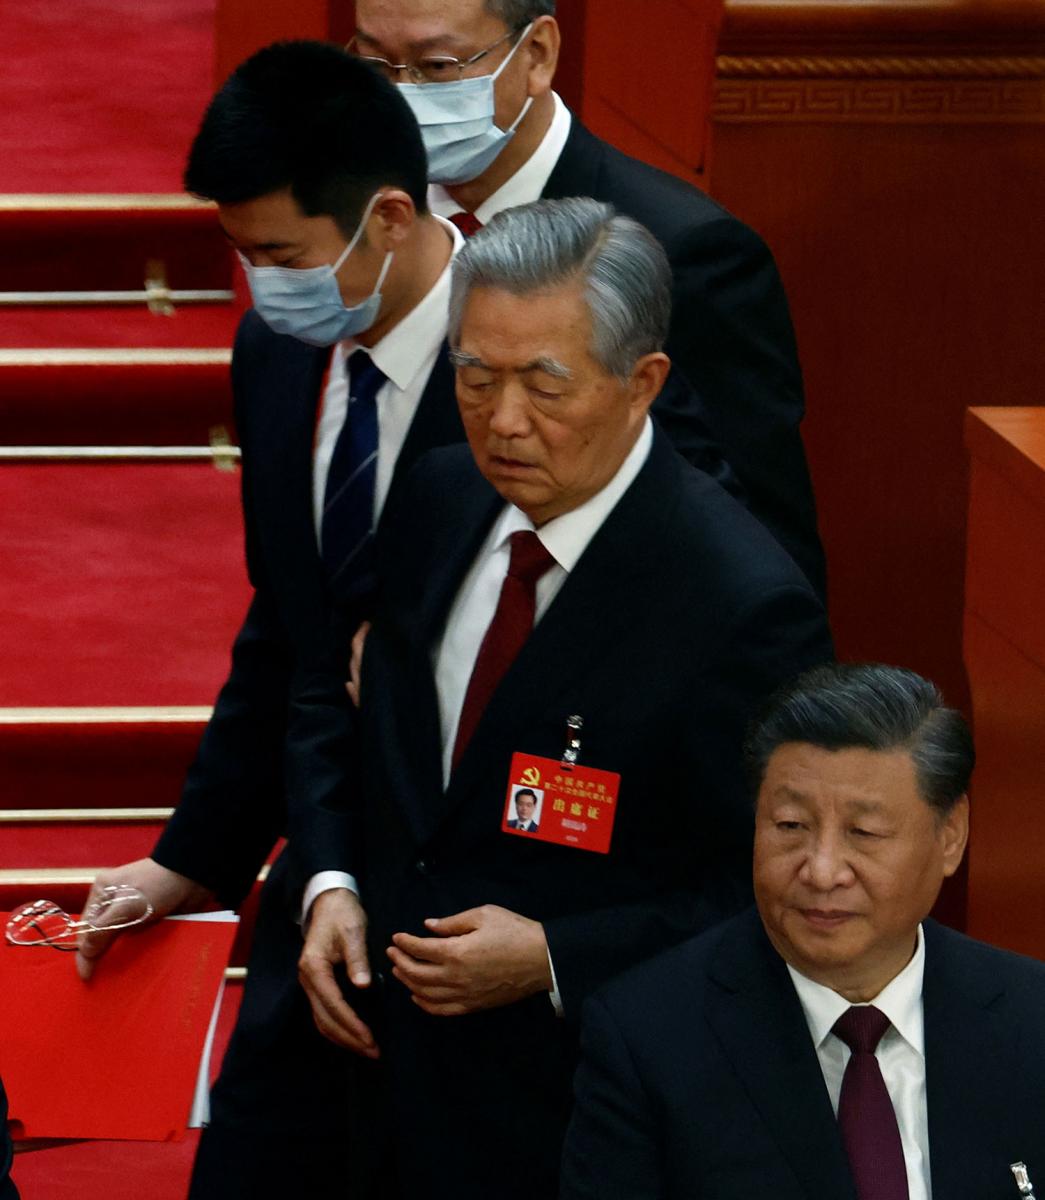 LA SALIDA. Hu Jintao es escoltado ante la indiferencia de Xi Jinping en el Congreso del Partido Comunista Chino.